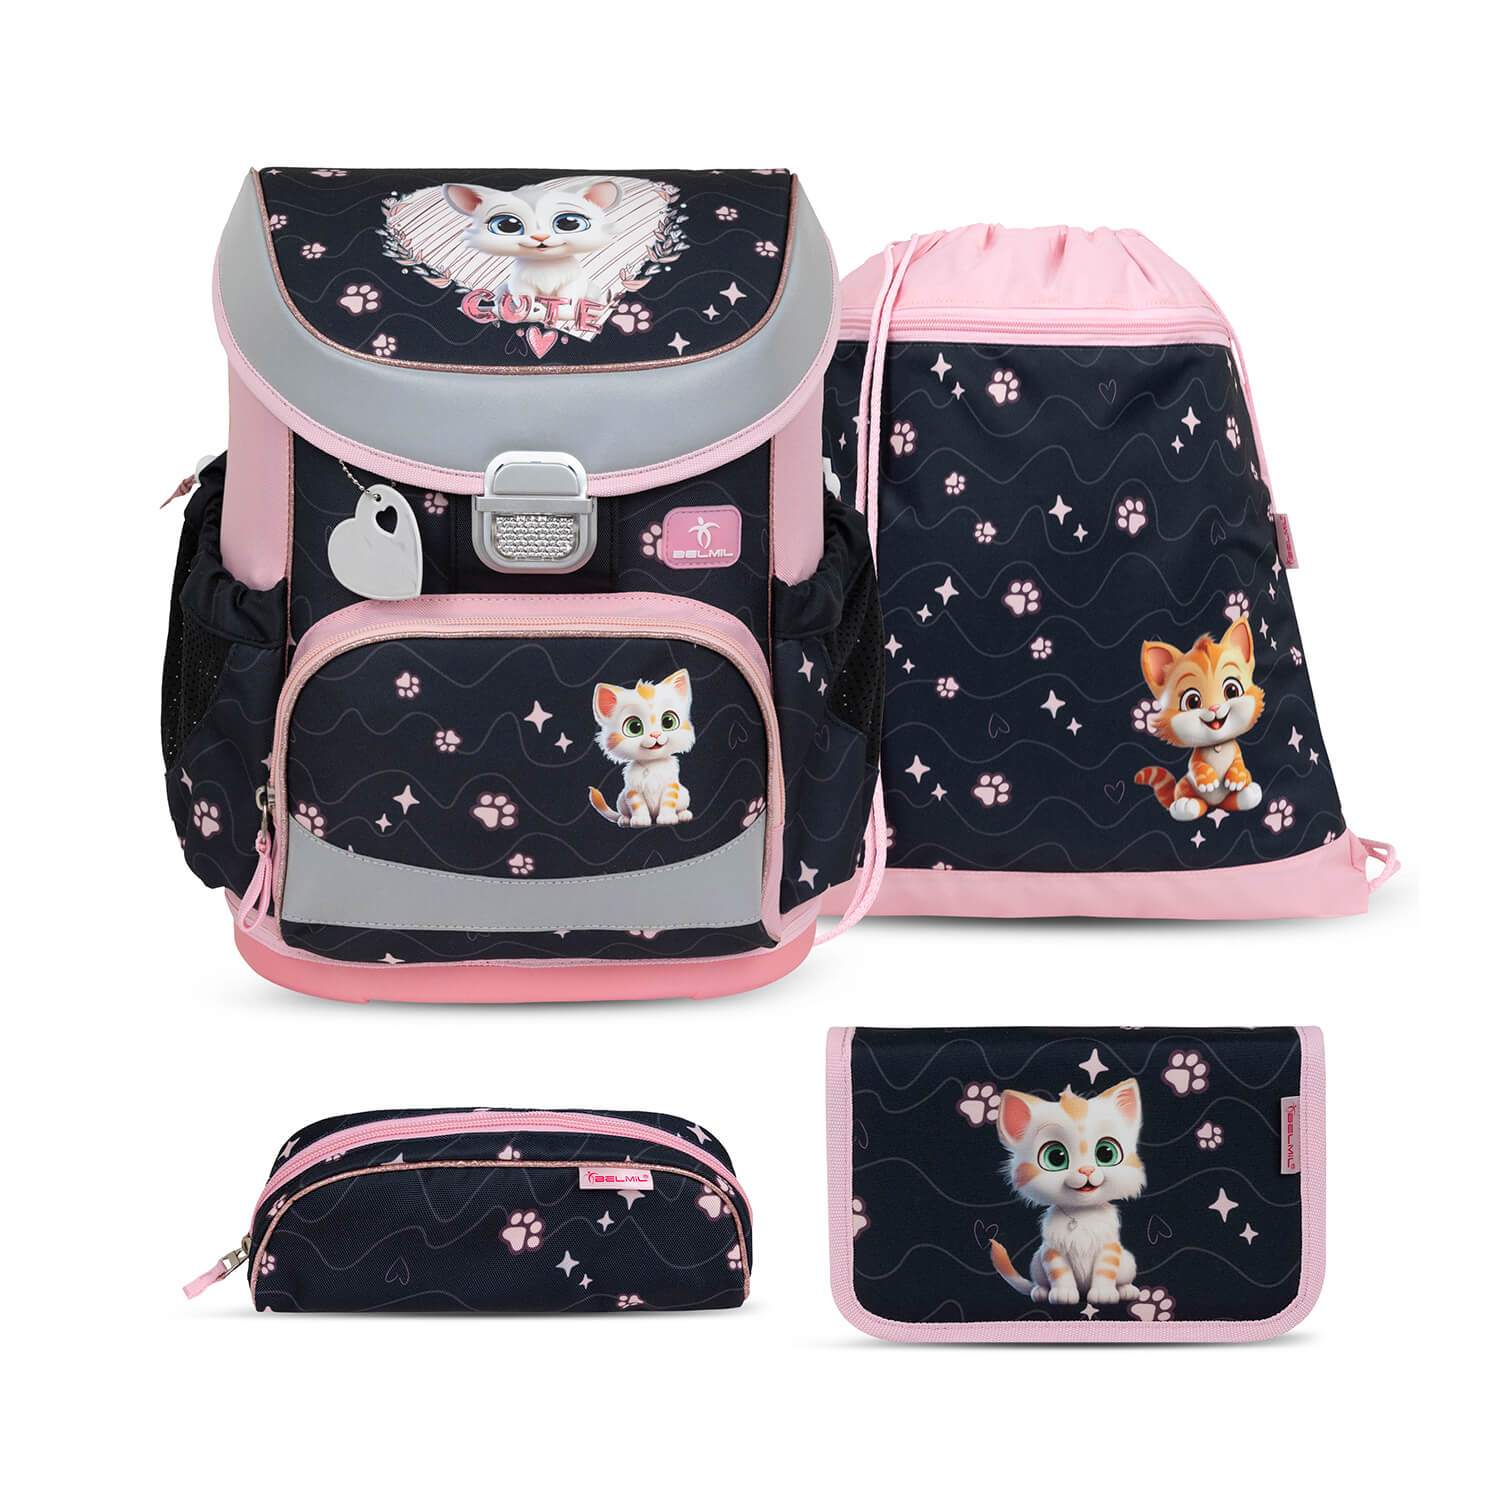 Mini-Fit Cute Kitten schoolbag set 4 pcs